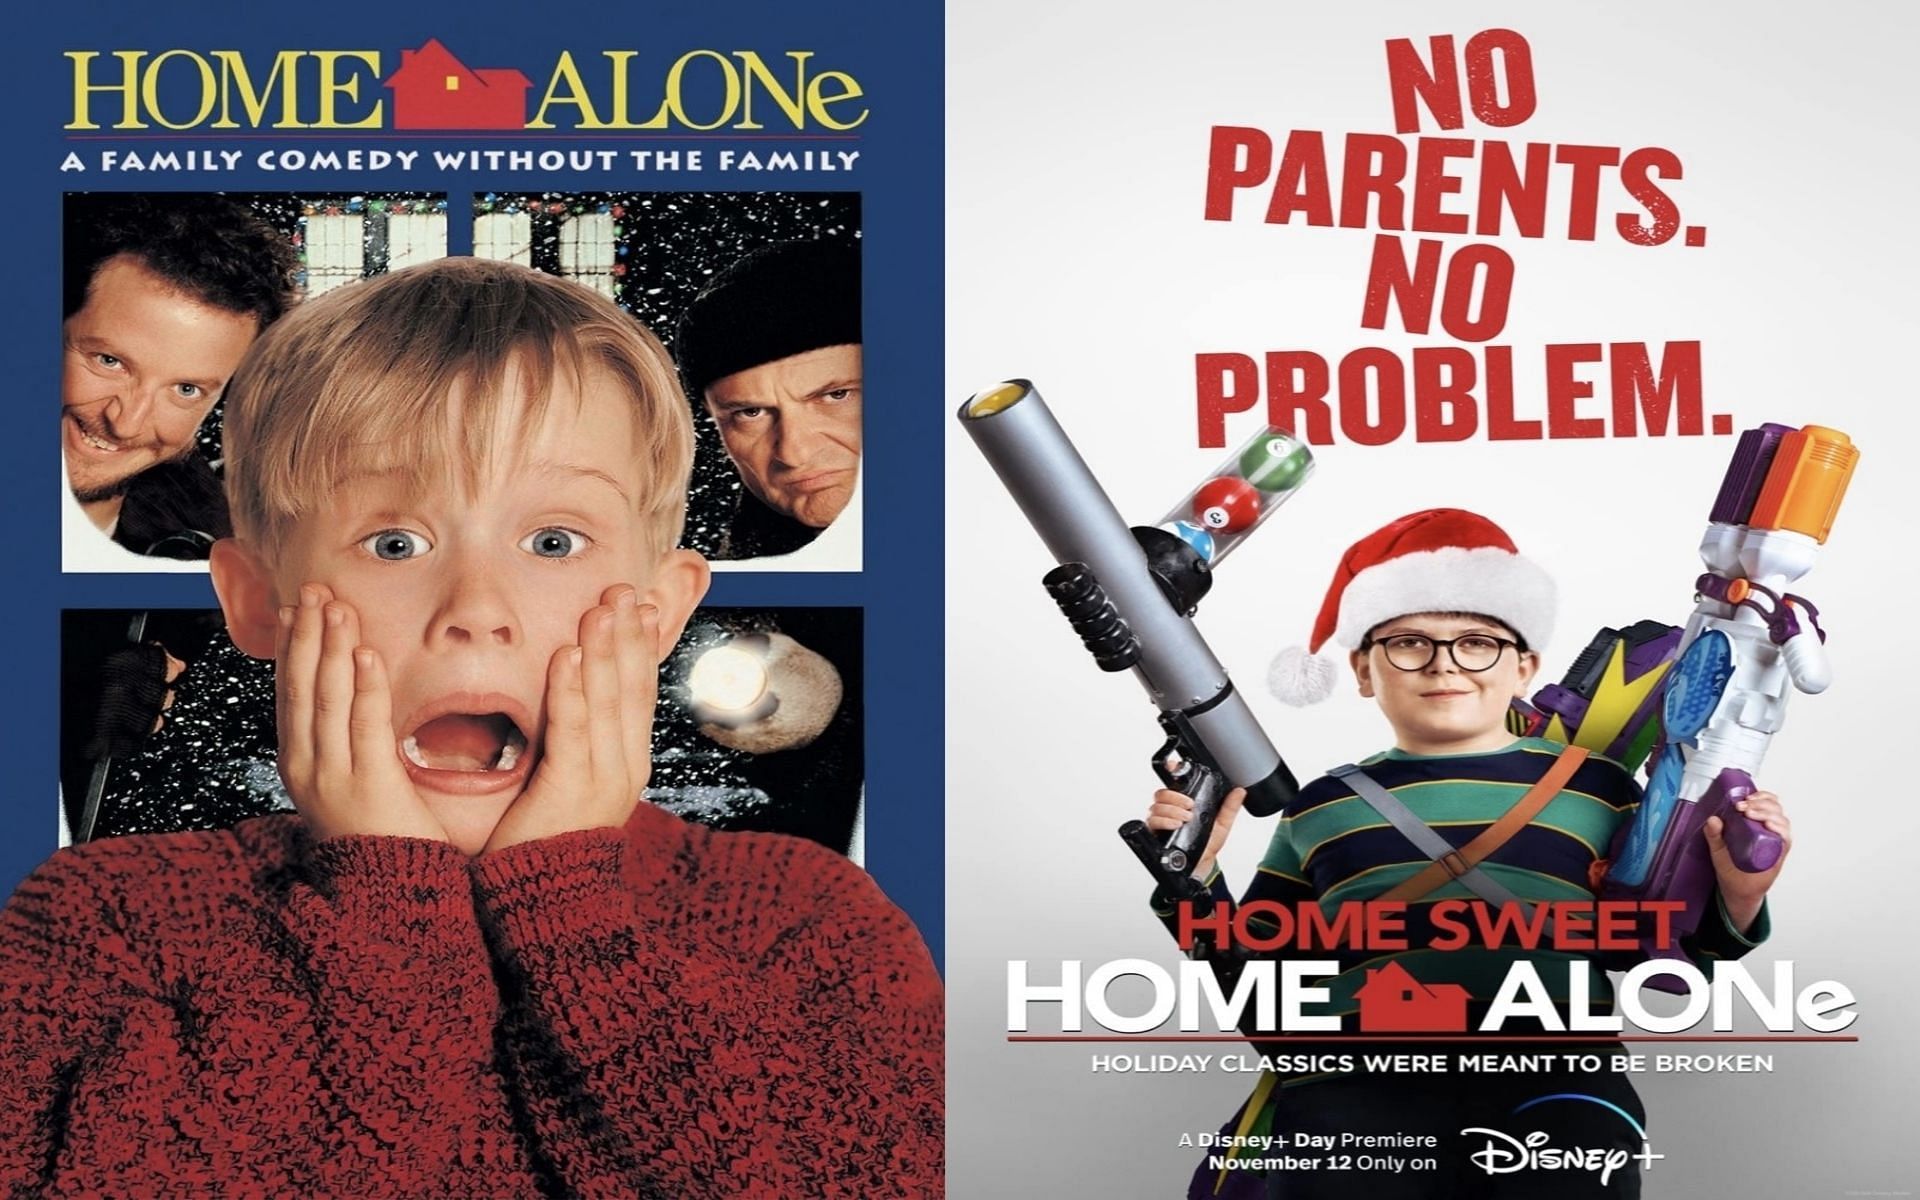 Home Alone (1990) and Home Sweet Home Alone (2021) (Image via Sportskeeda)